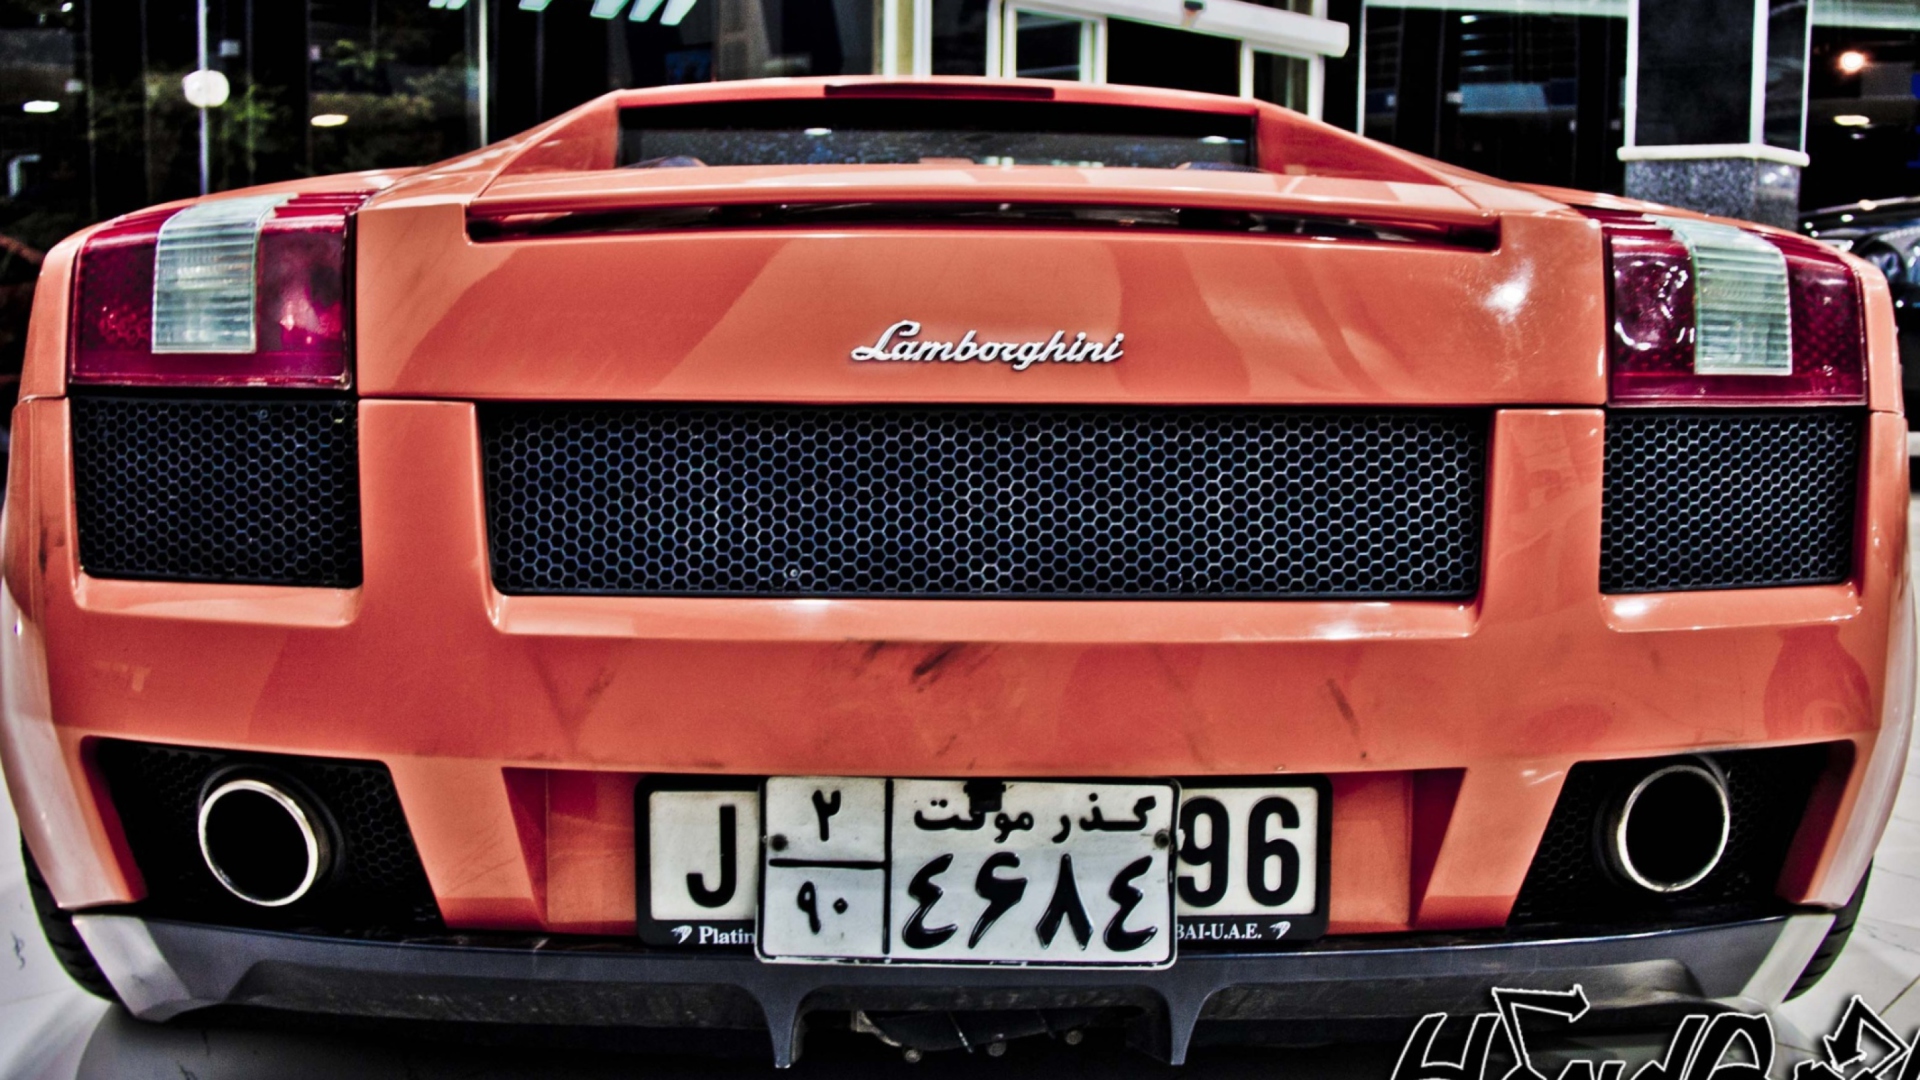 Das Lamborghini Wallpaper 1920x1080